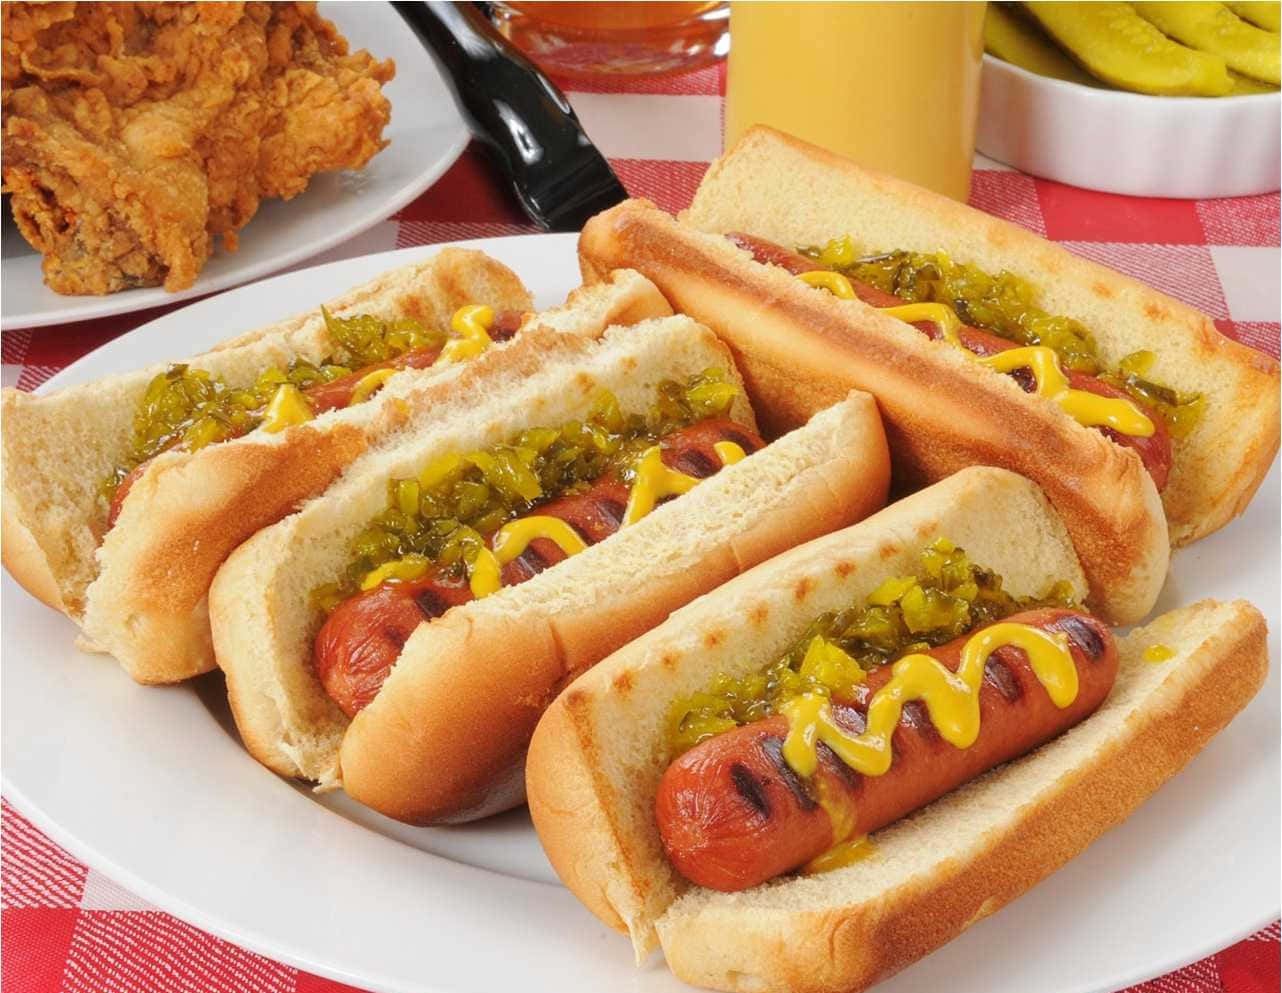 Deliciously Juicy Hot Dog